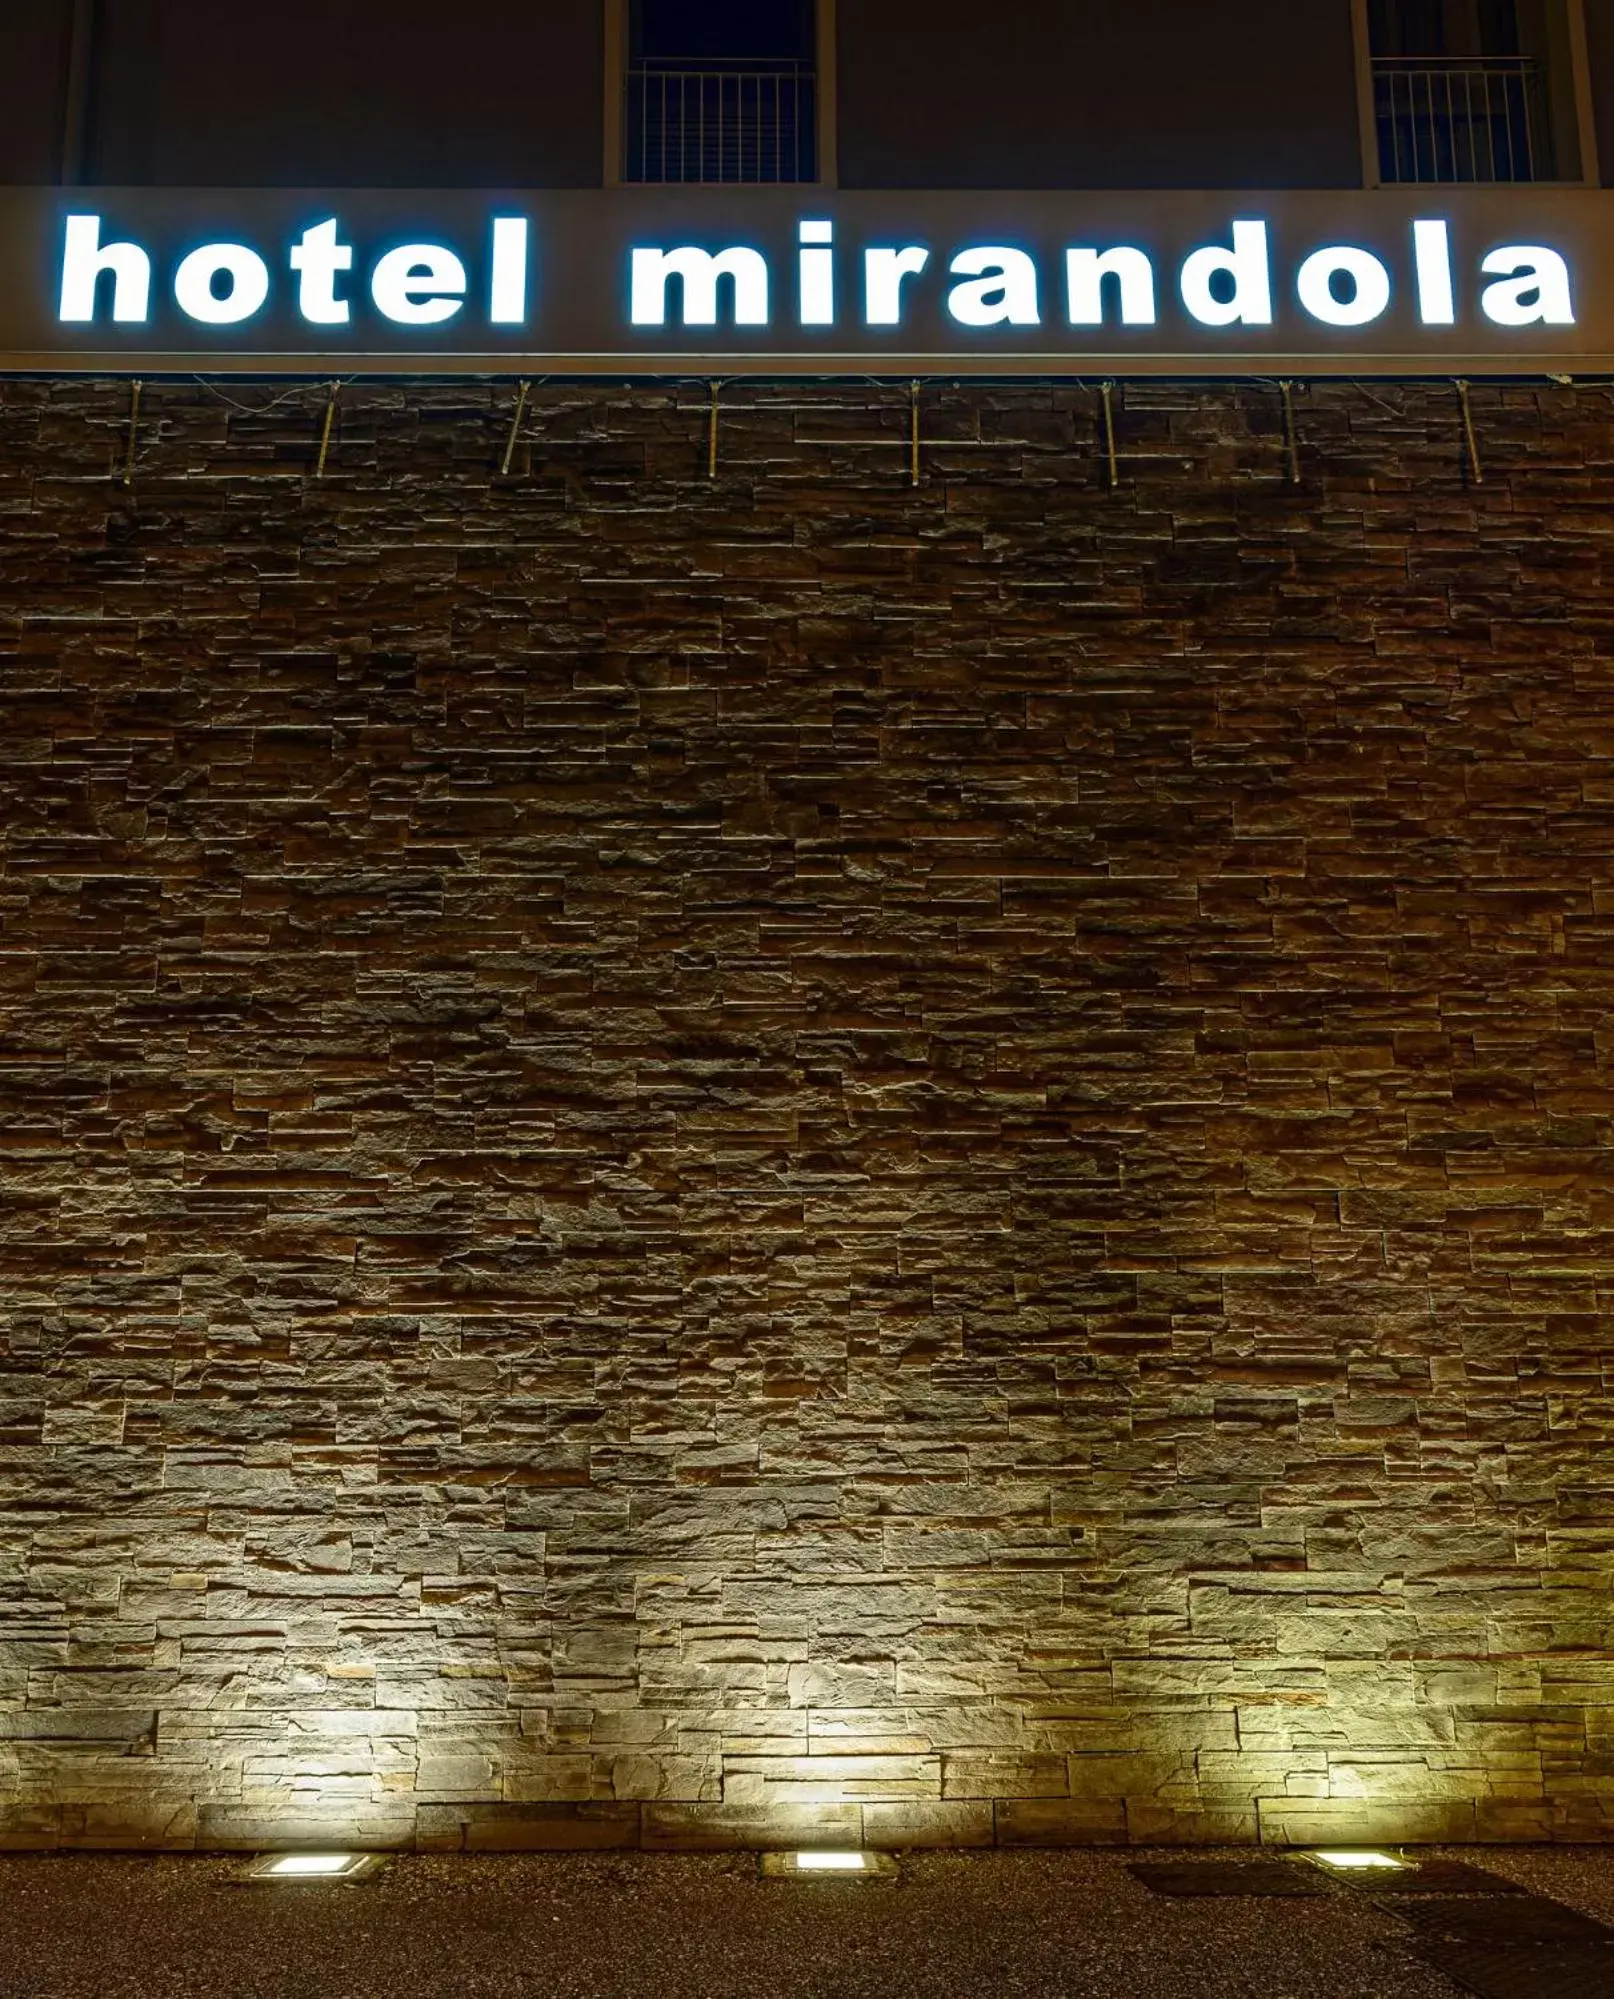 Property building in Hotel Mirandola